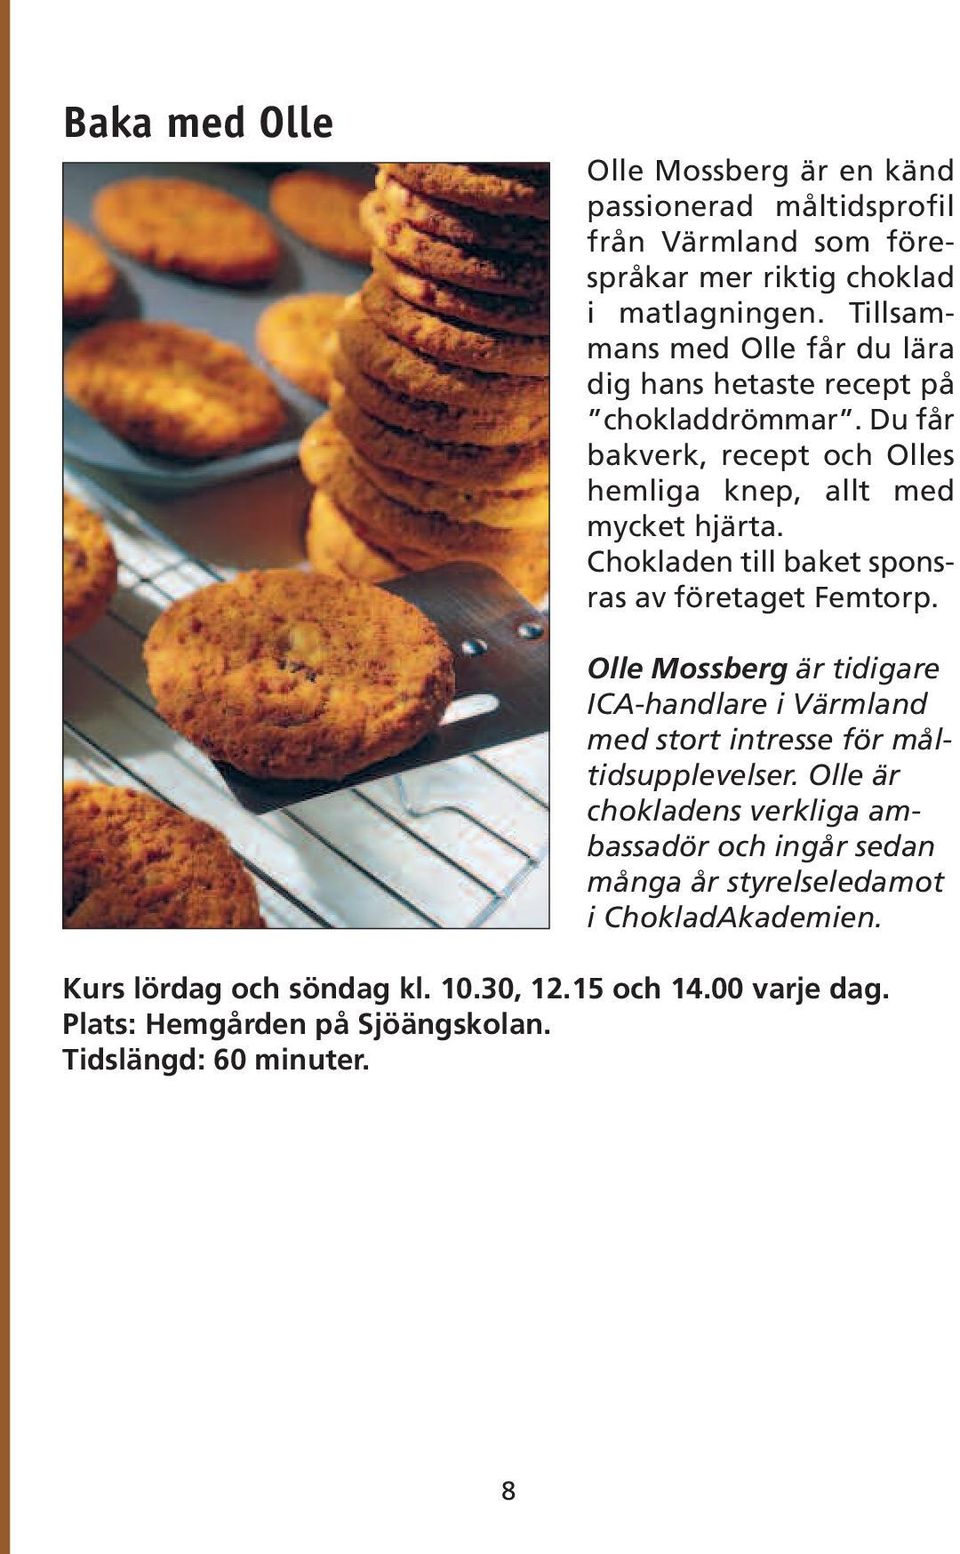 Chokladen till baket sponsras av företaget Femtorp. Olle Mossberg är tidigare ICA-handlare i Värmland med stort intresse för måltidsupplevelser.